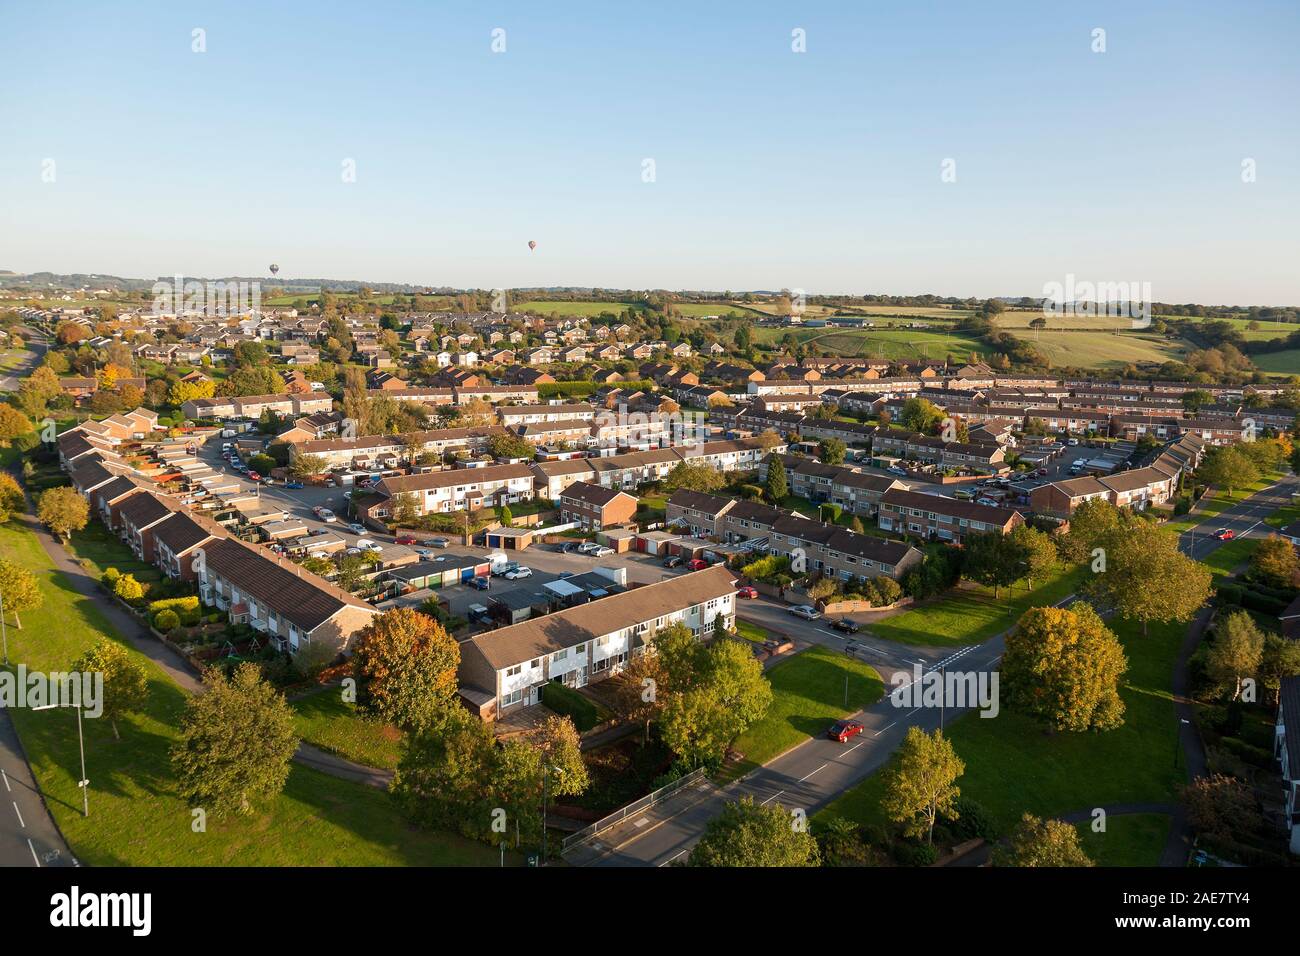 Vue aérienne de maisons de Yate, South Gloucestershire, Angleterre, Royaume-Uni. Banque D'Images